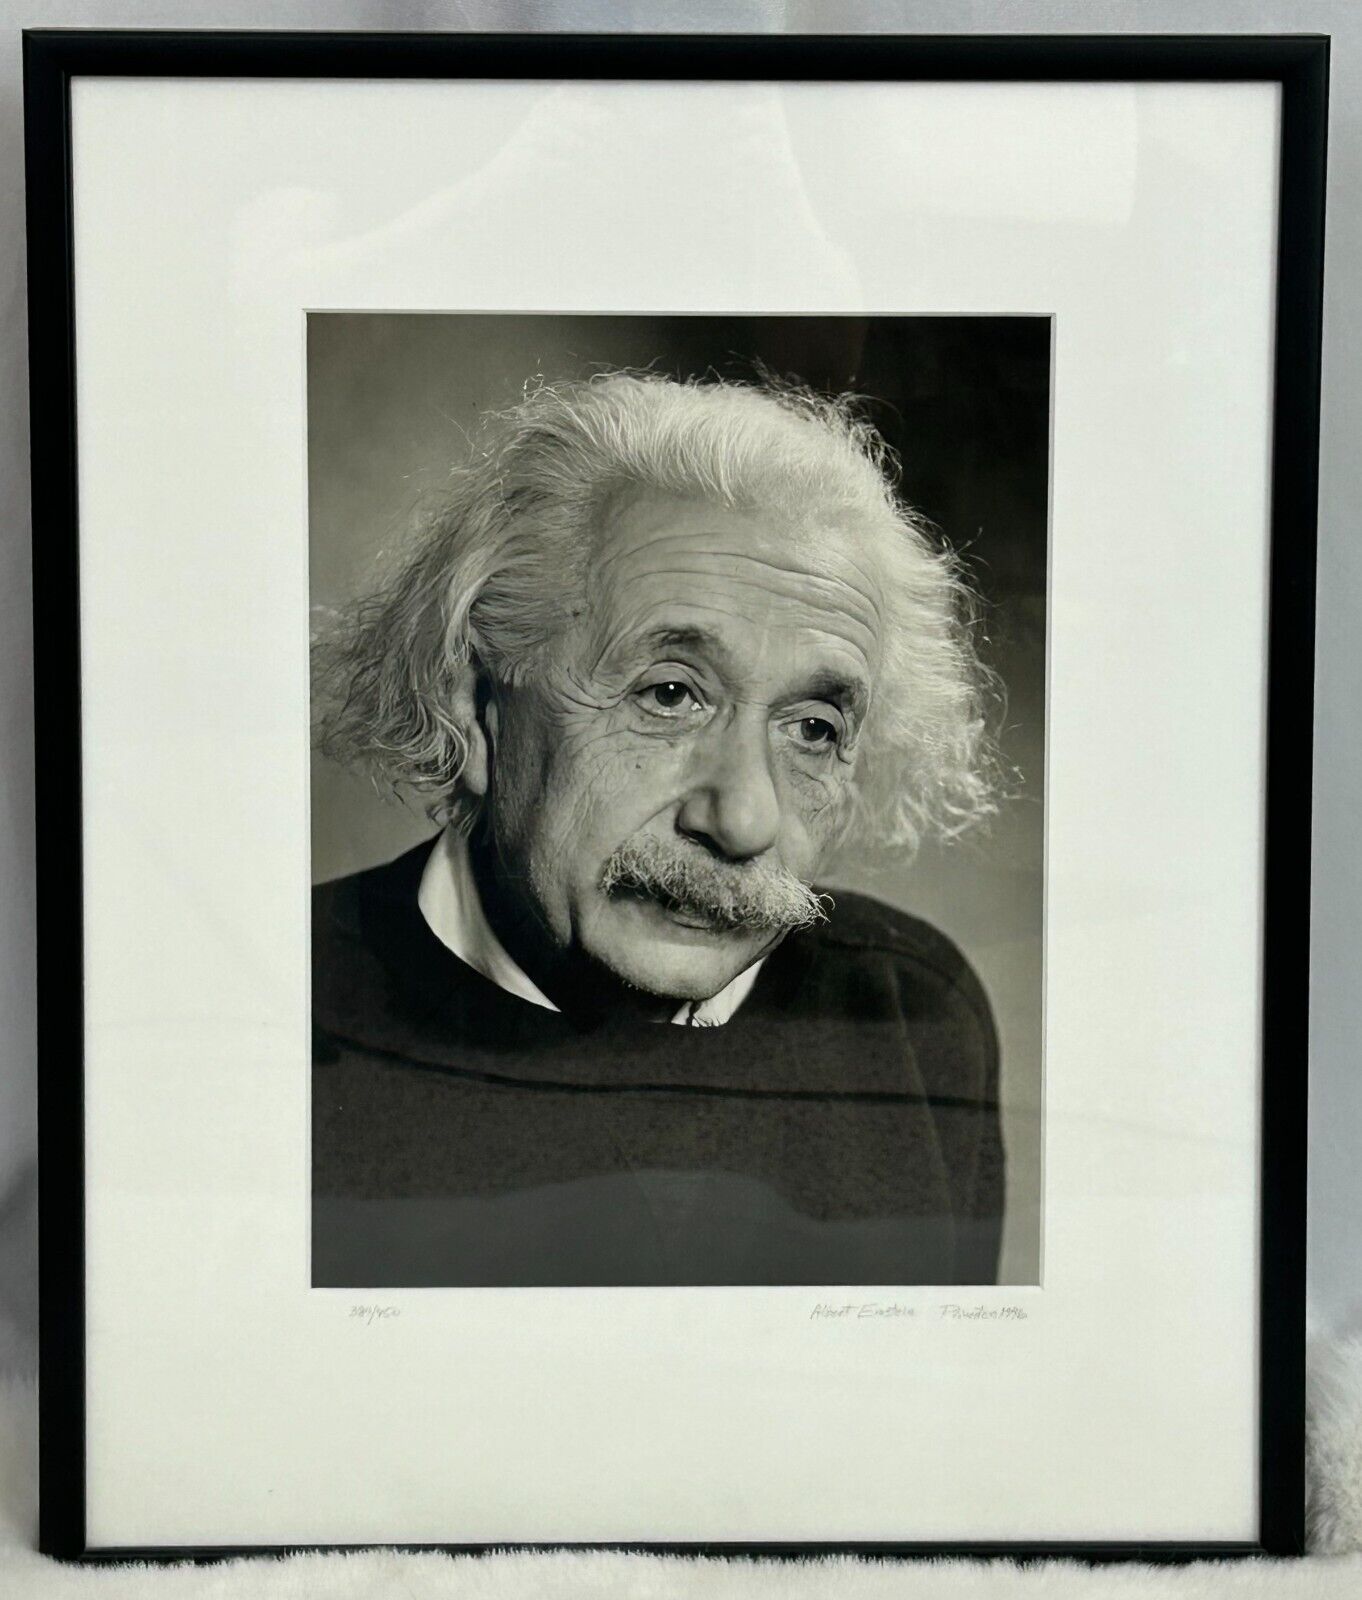 ALBERT EINSTEIN 1946 - Vintage Limited Edition Portrait Photograph - Fred Stein